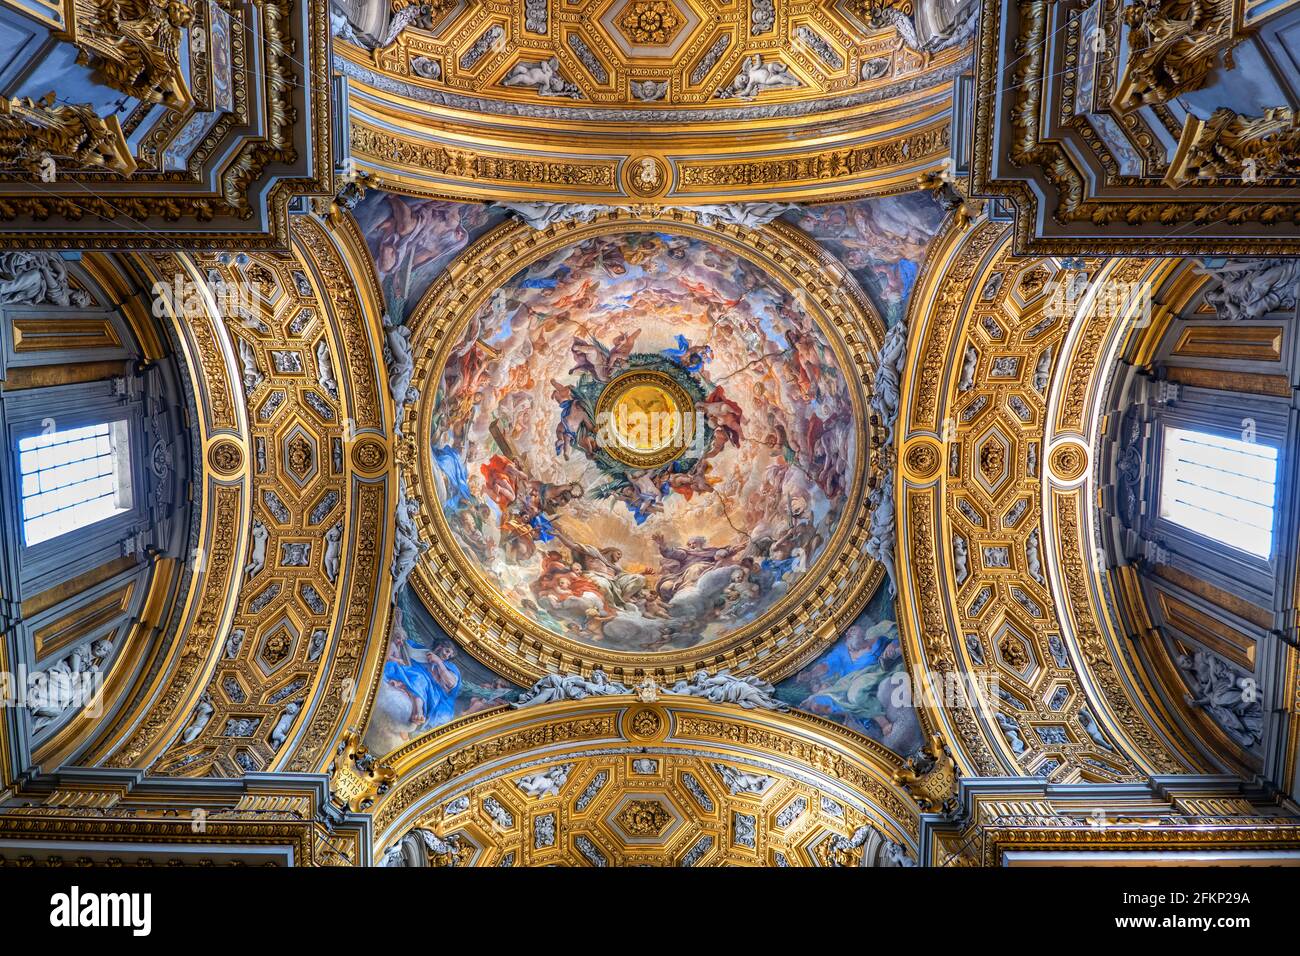 Italy, Rome, ceiling dome with the Triumph of the Trinity fresco by Pietro da Cortona in Santa Maria in Vallicella (Chiesa Nuova) Baroque church inter Stock Photo